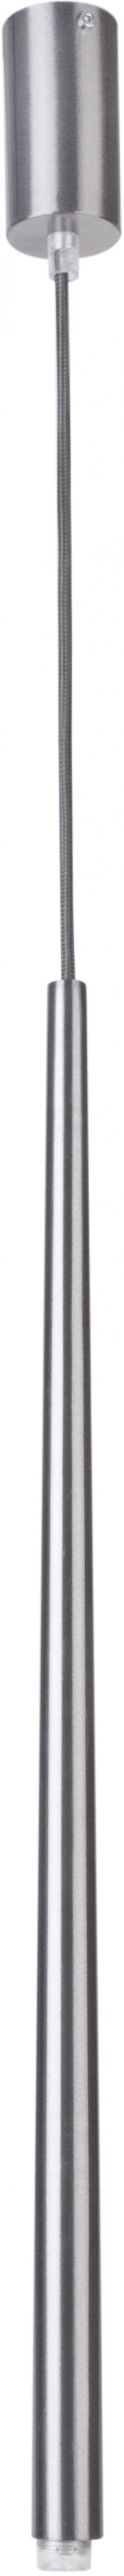 Lampa wisząca Sigma srebrny stożek 33153